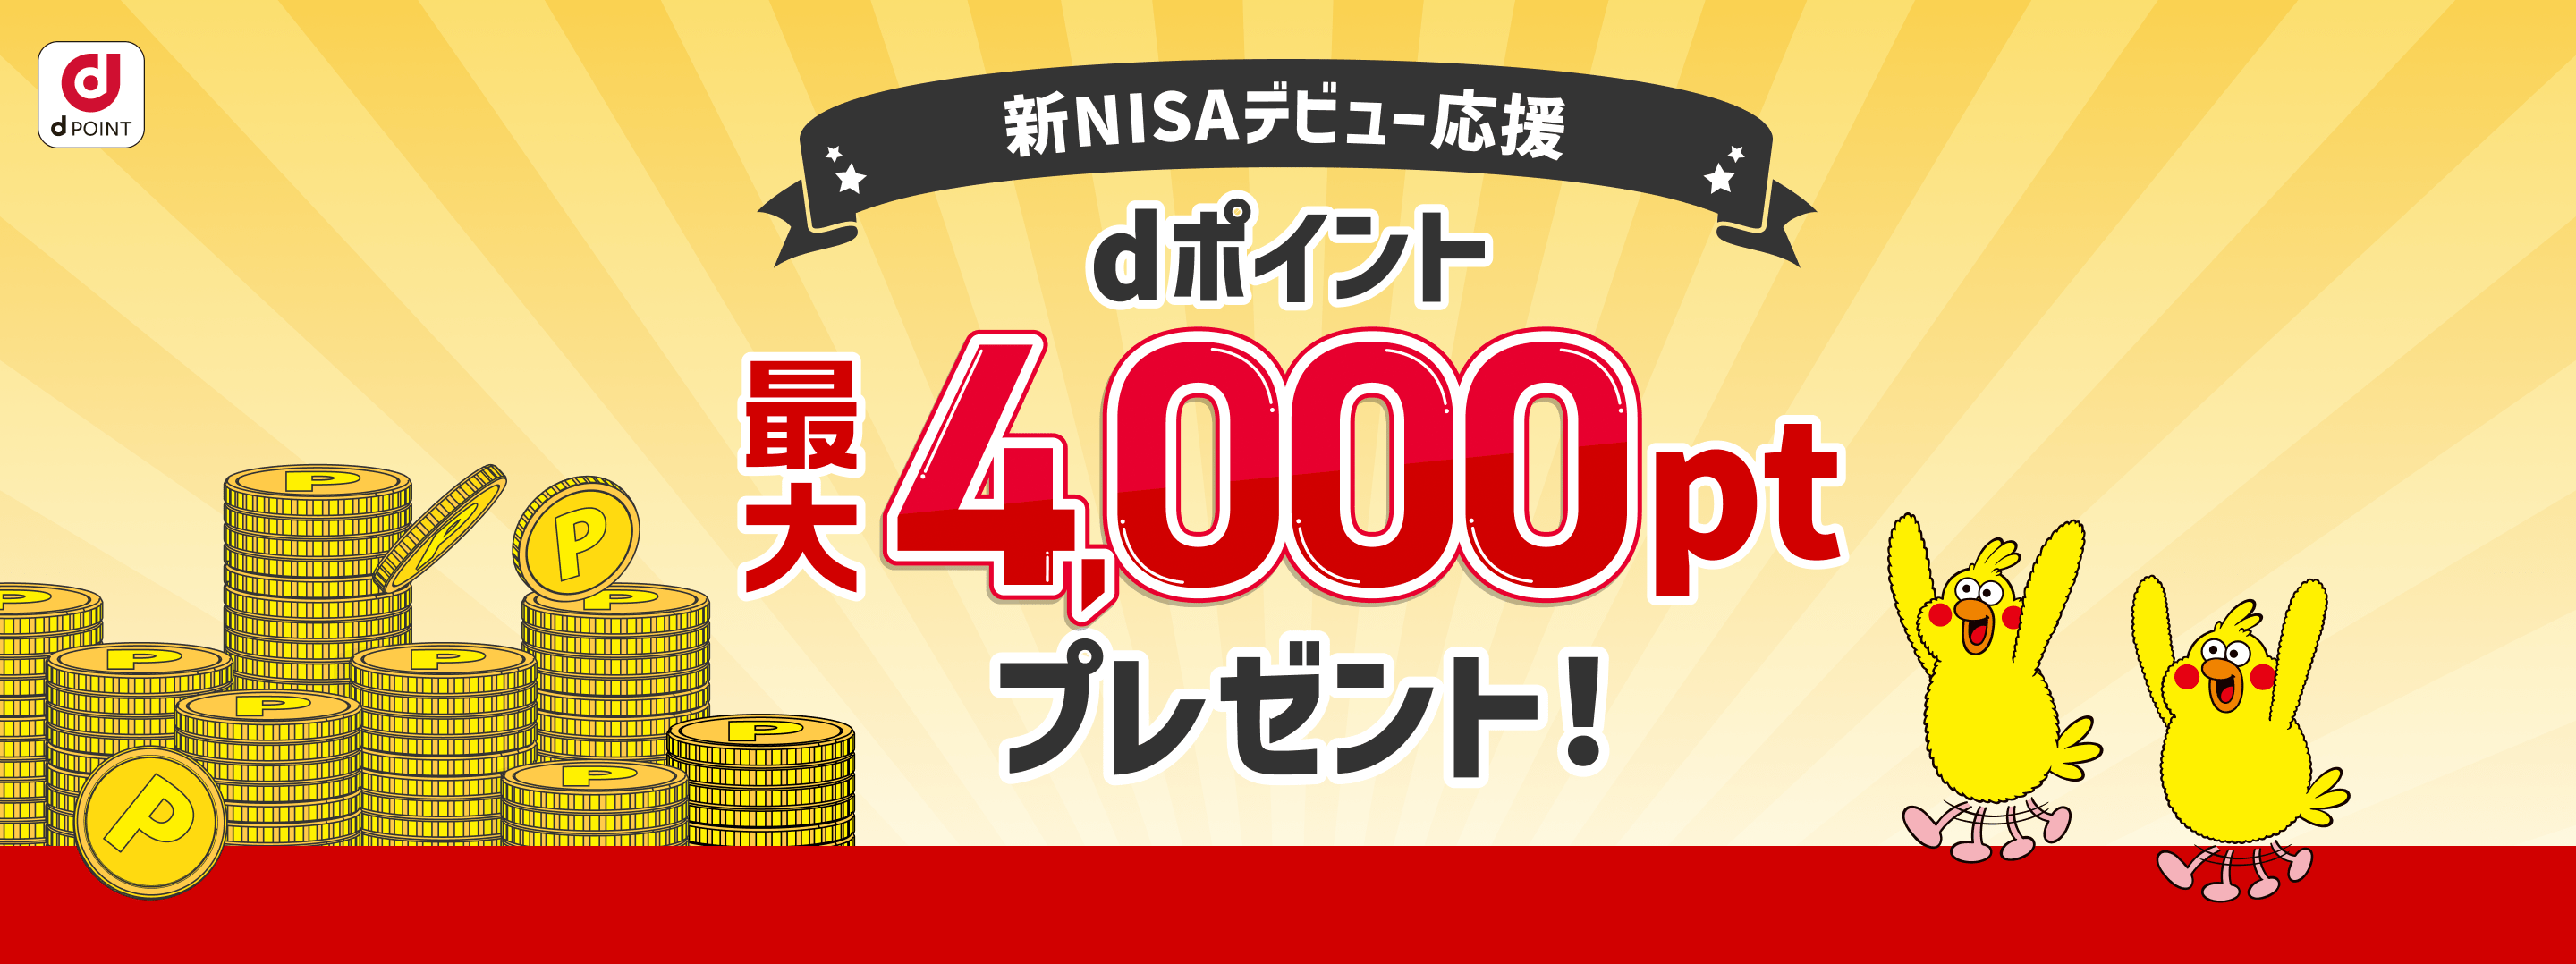 新NISAデビュー応援 dポイント 最大4,000ptプレゼント